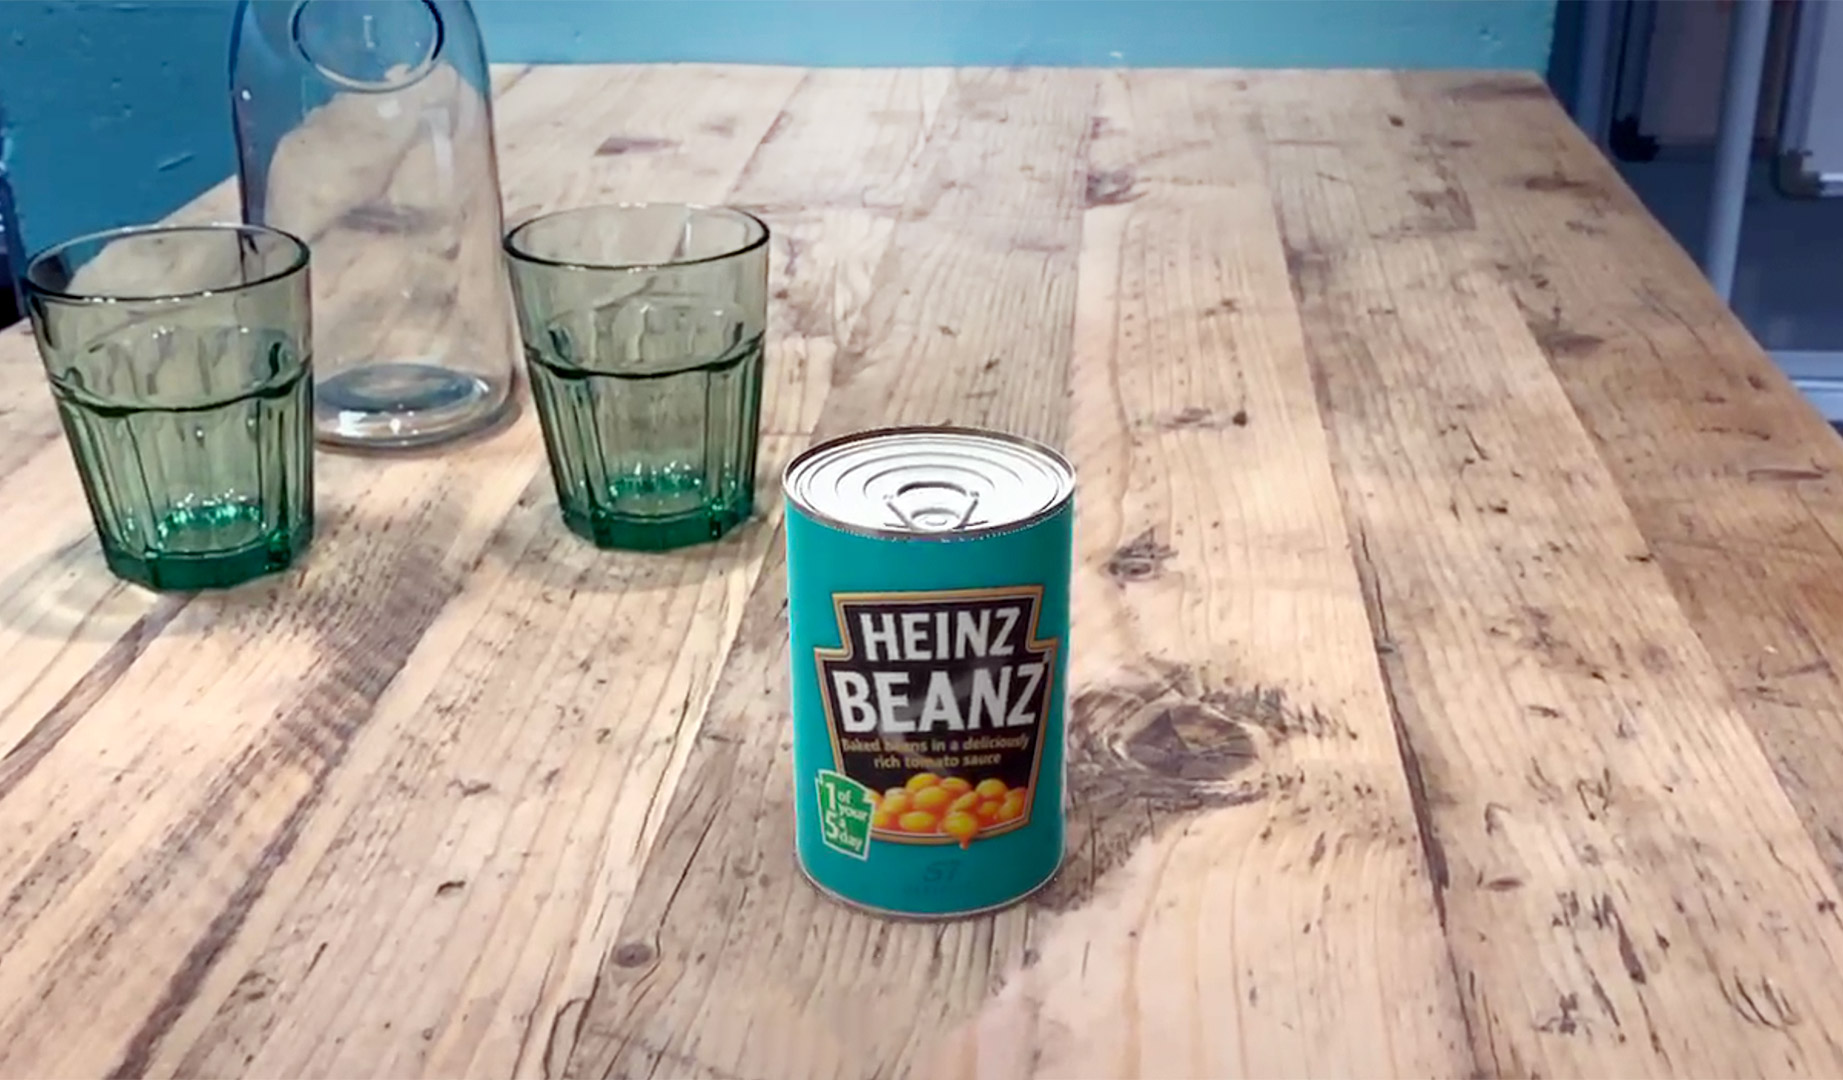 AR app in use with bean tin